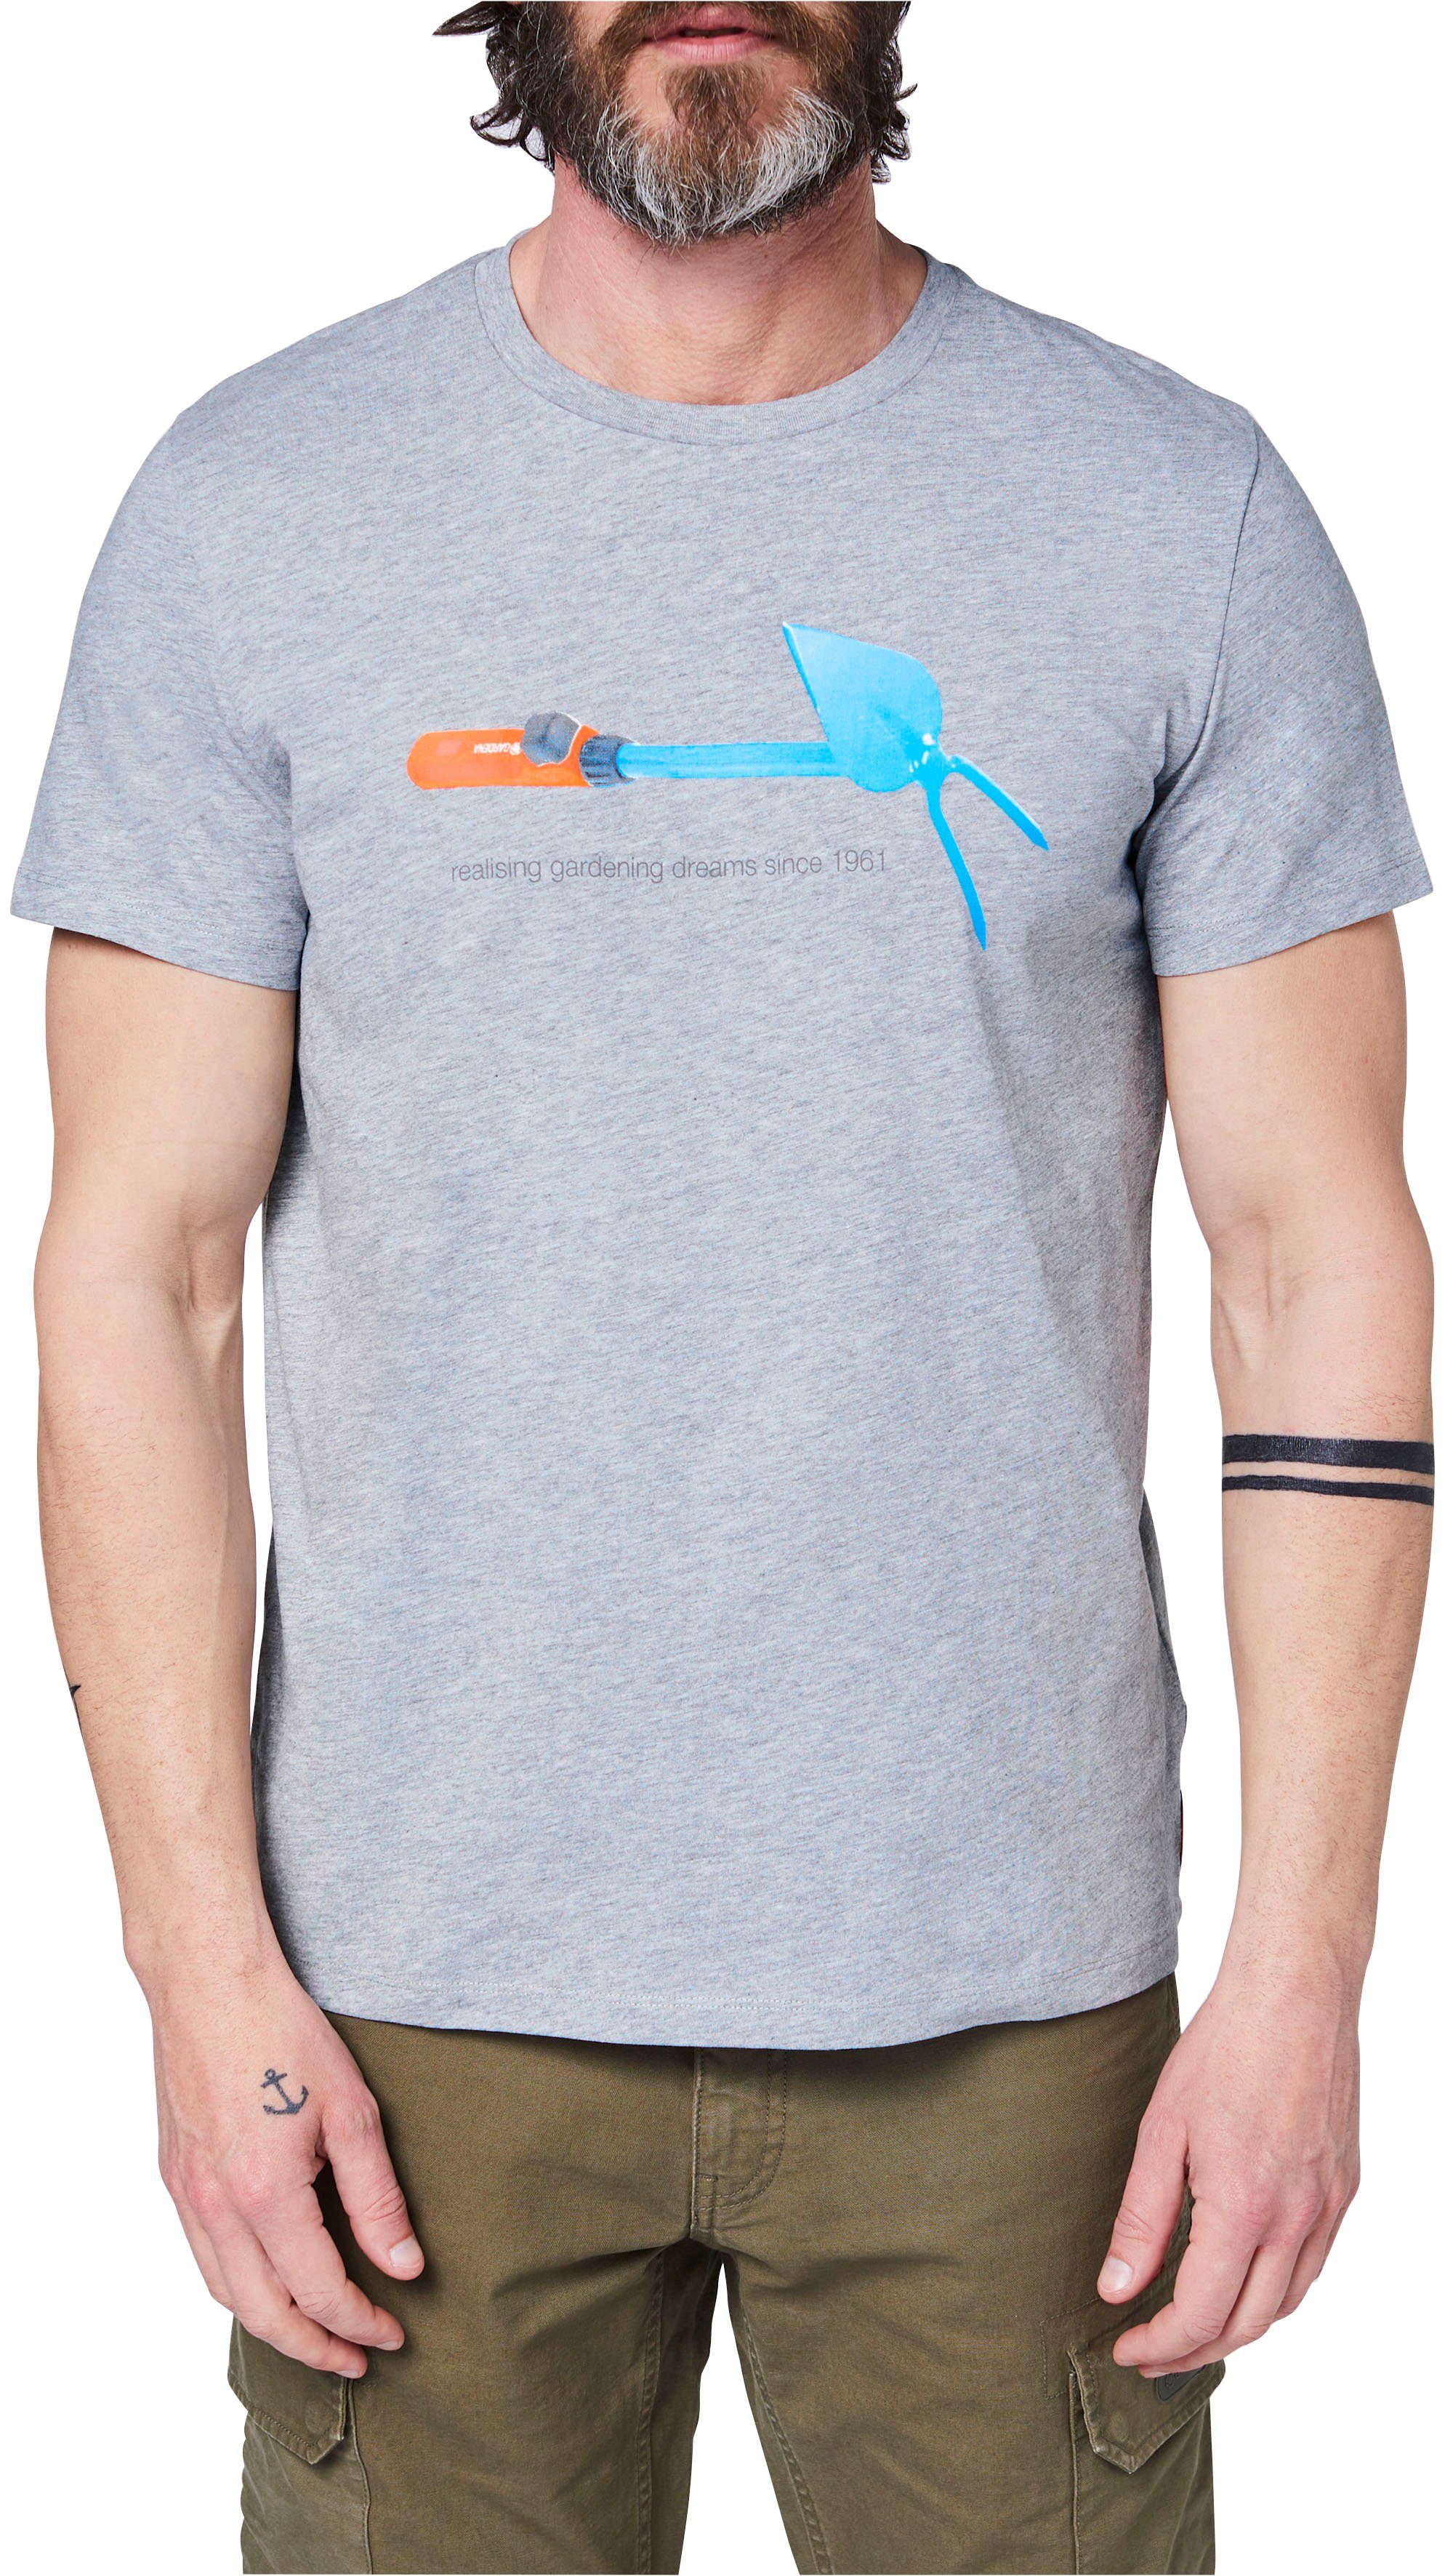 Melange GARDENA Aufdruck T-Shirt mit Grey Light